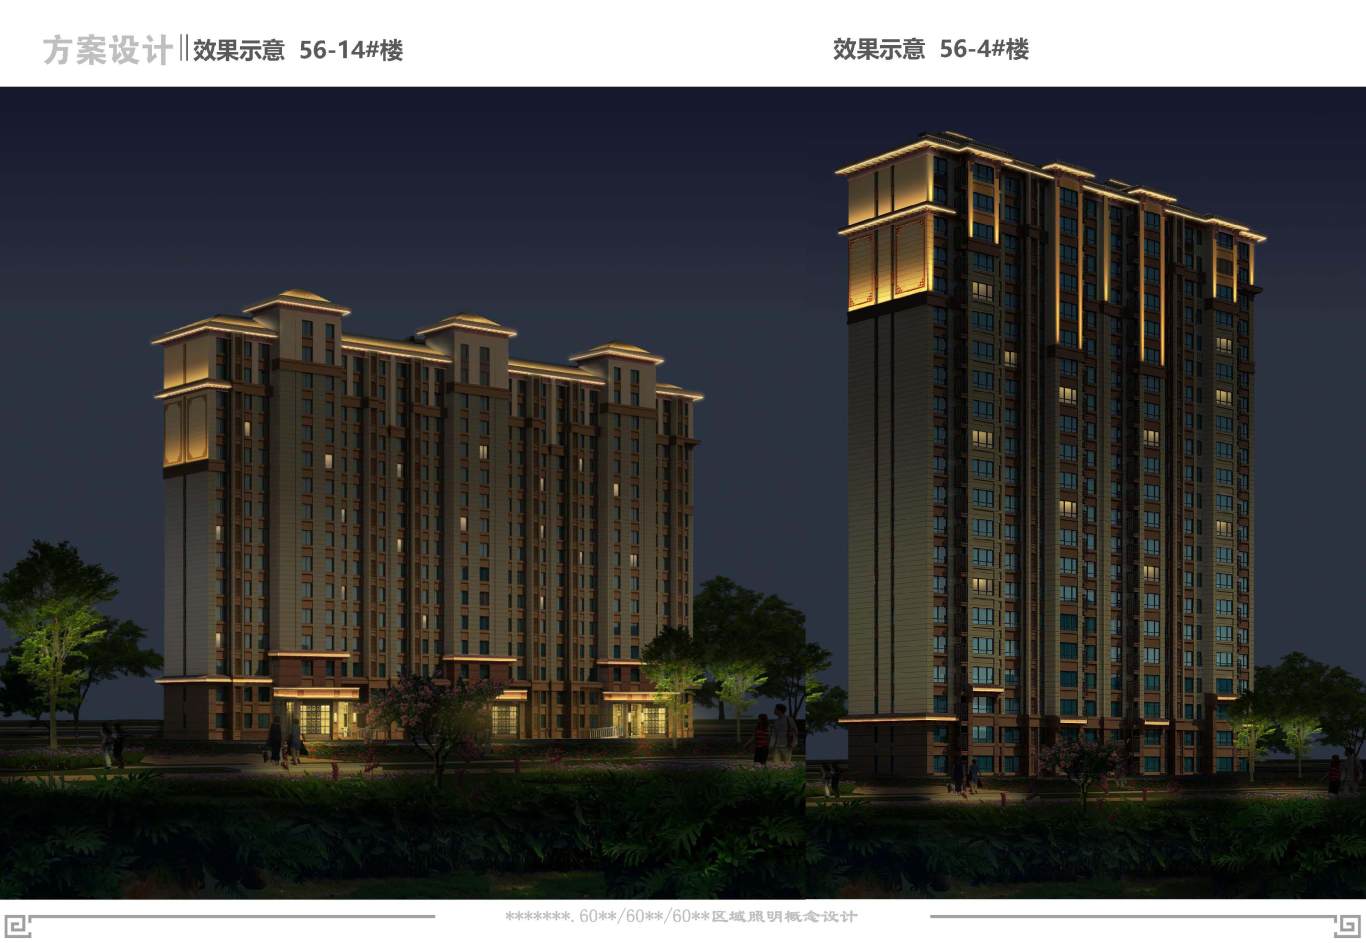 中式高層住宅樓夜景照明設計圖20